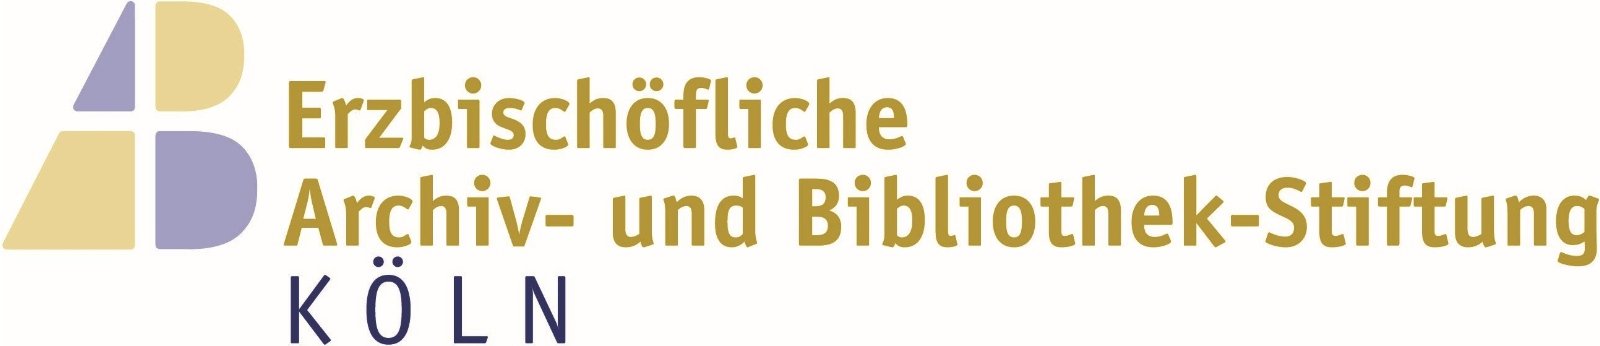 Erzbischöfliche Archiv- und Bibliothek-Stiftung Köln